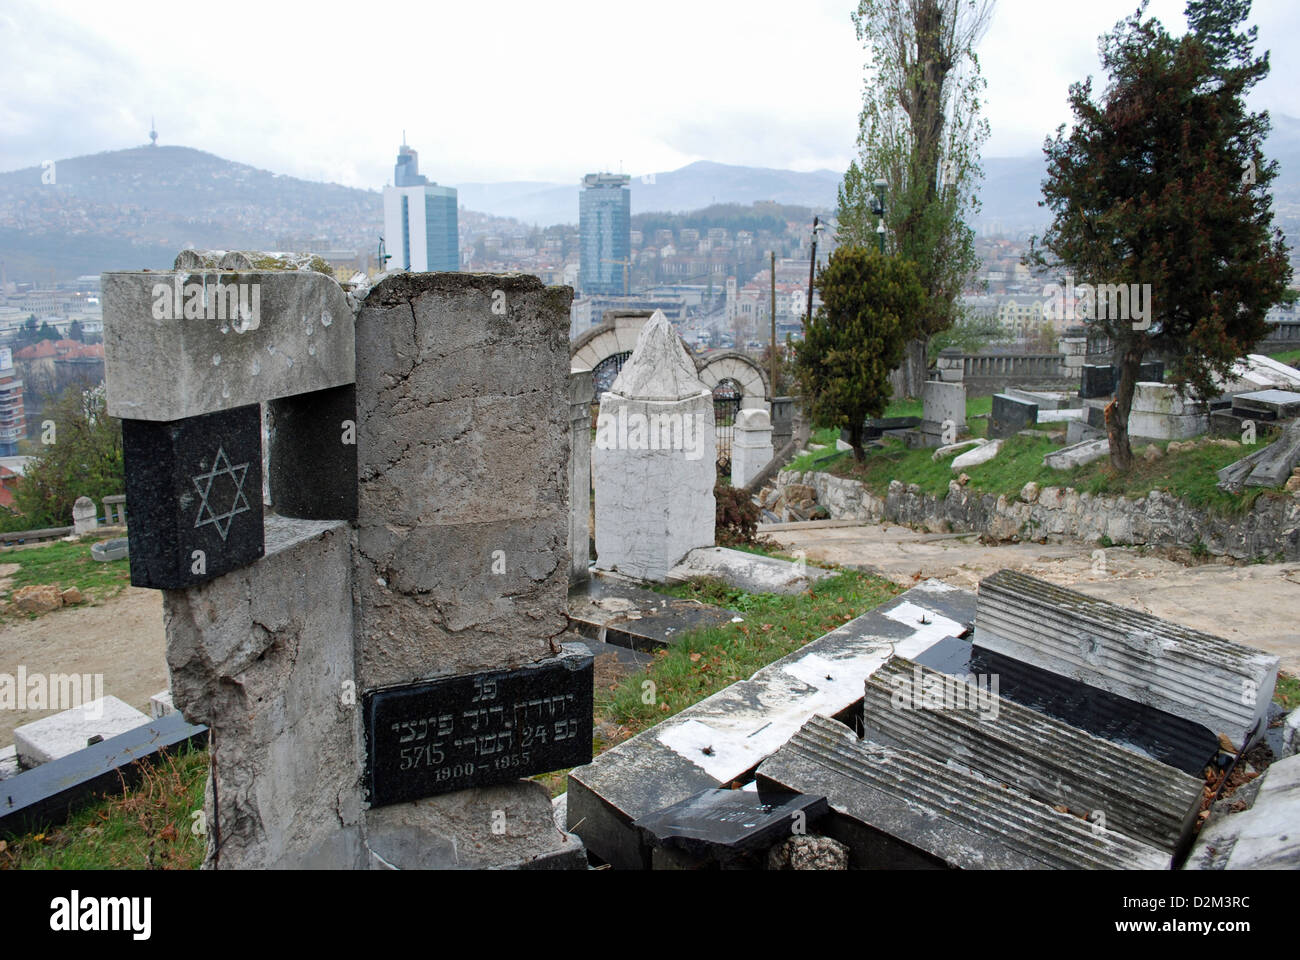 Des tombes juives endommagé par des coups de feu au cours du siège de Sarajevo. Le cimetière sur le mont Trebevic était occupé par les snipers serbes. Banque D'Images